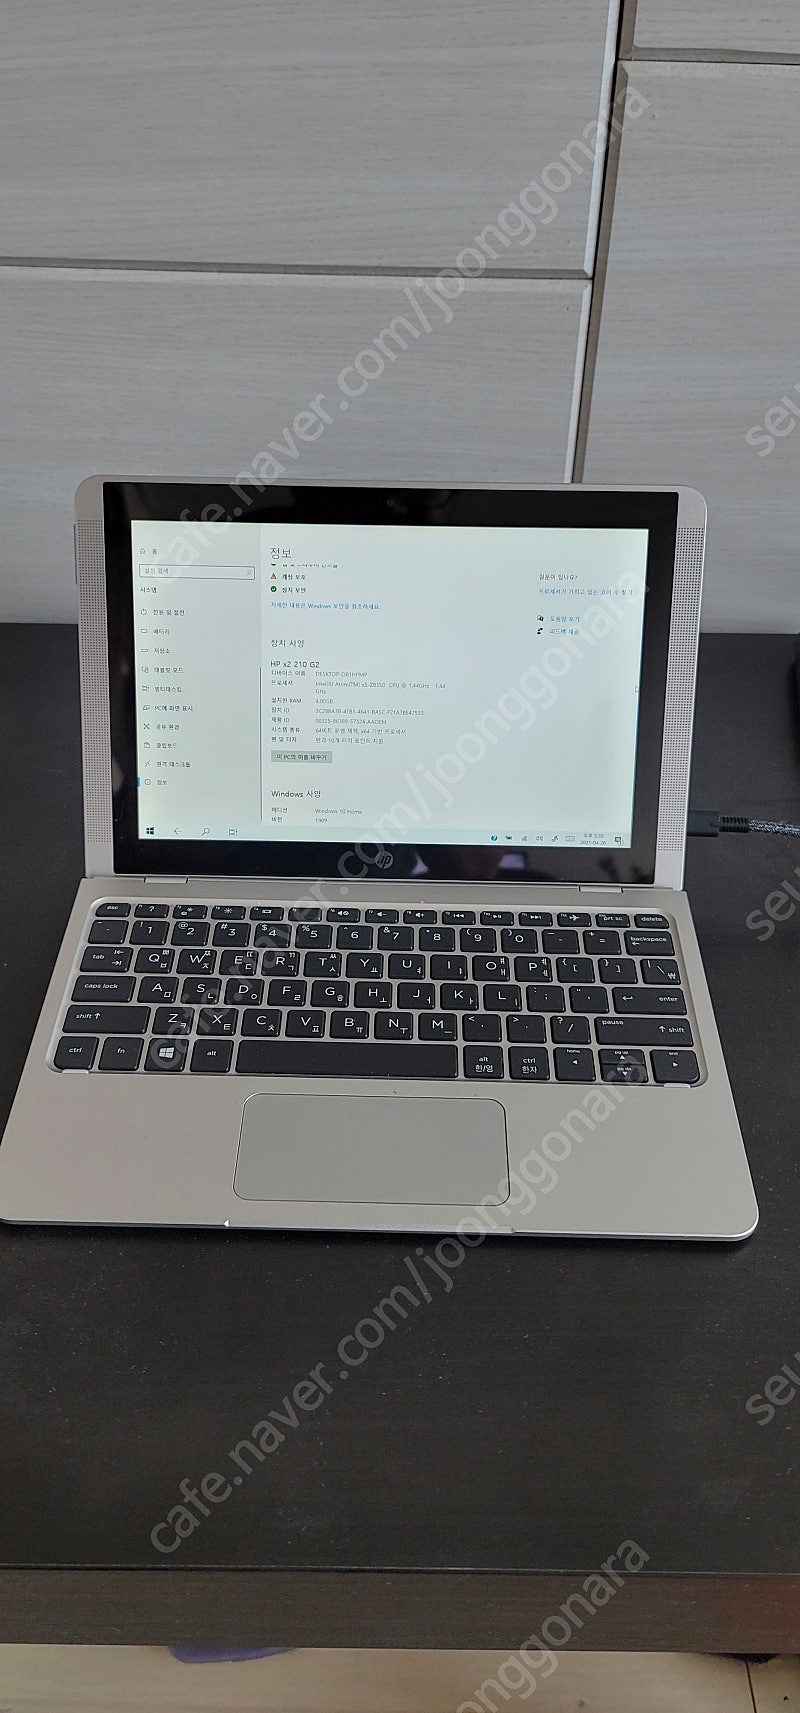 HP x2 210 G2 탈착식 노트북(cpu x5-z8350, ram 4G, ssd 128G, IPS터치스크린)